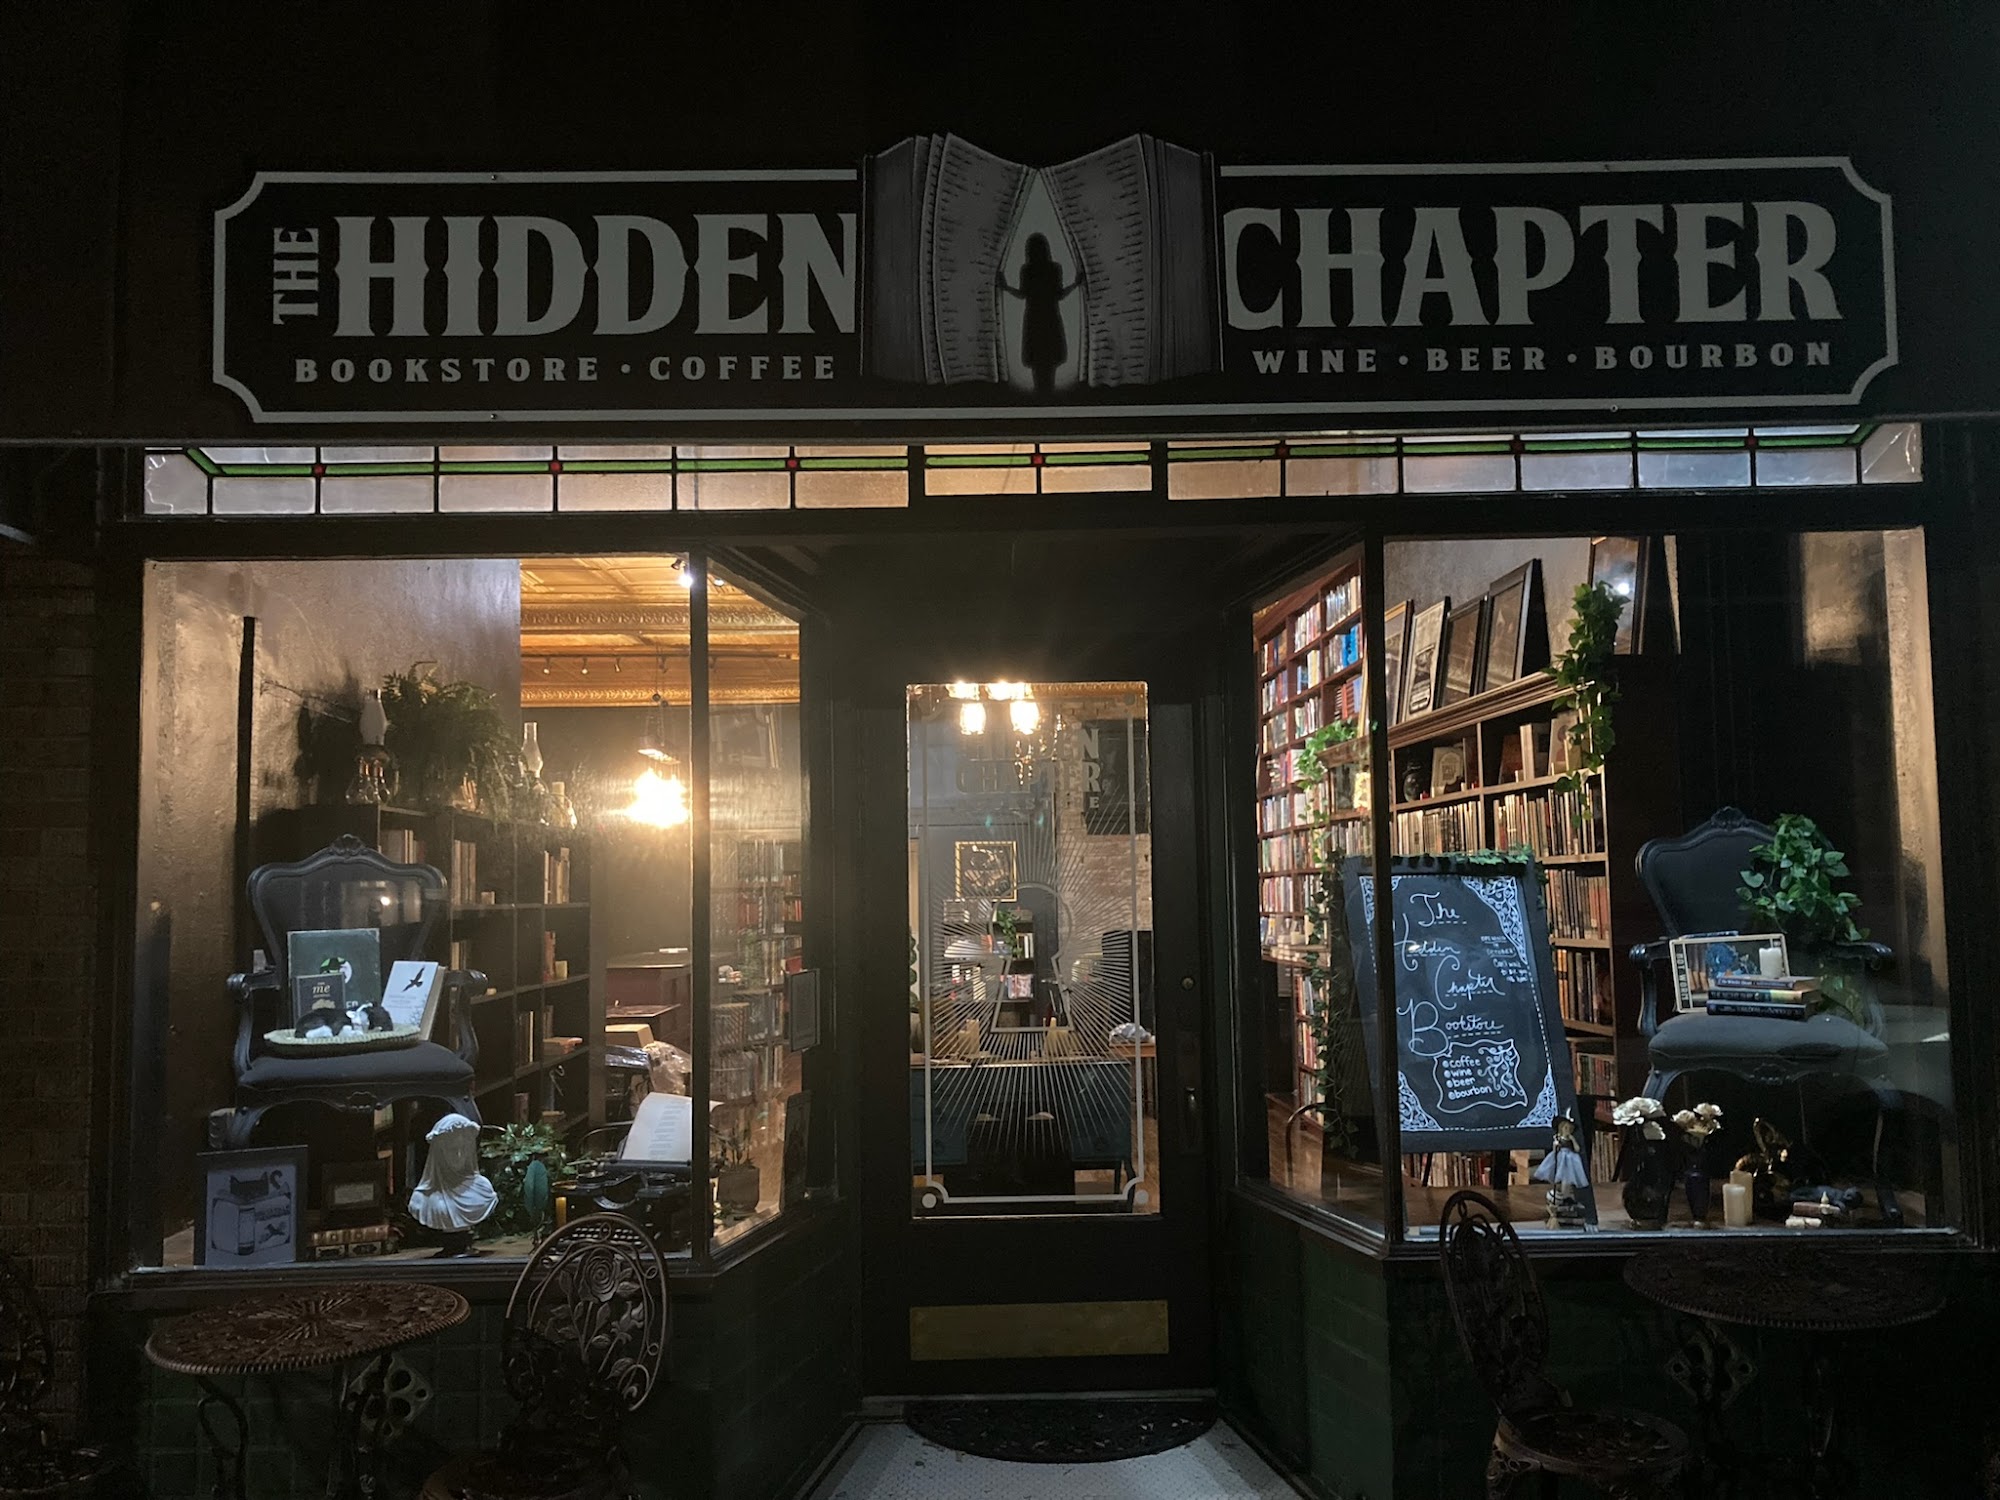 The Hidden Chapter Bookstore